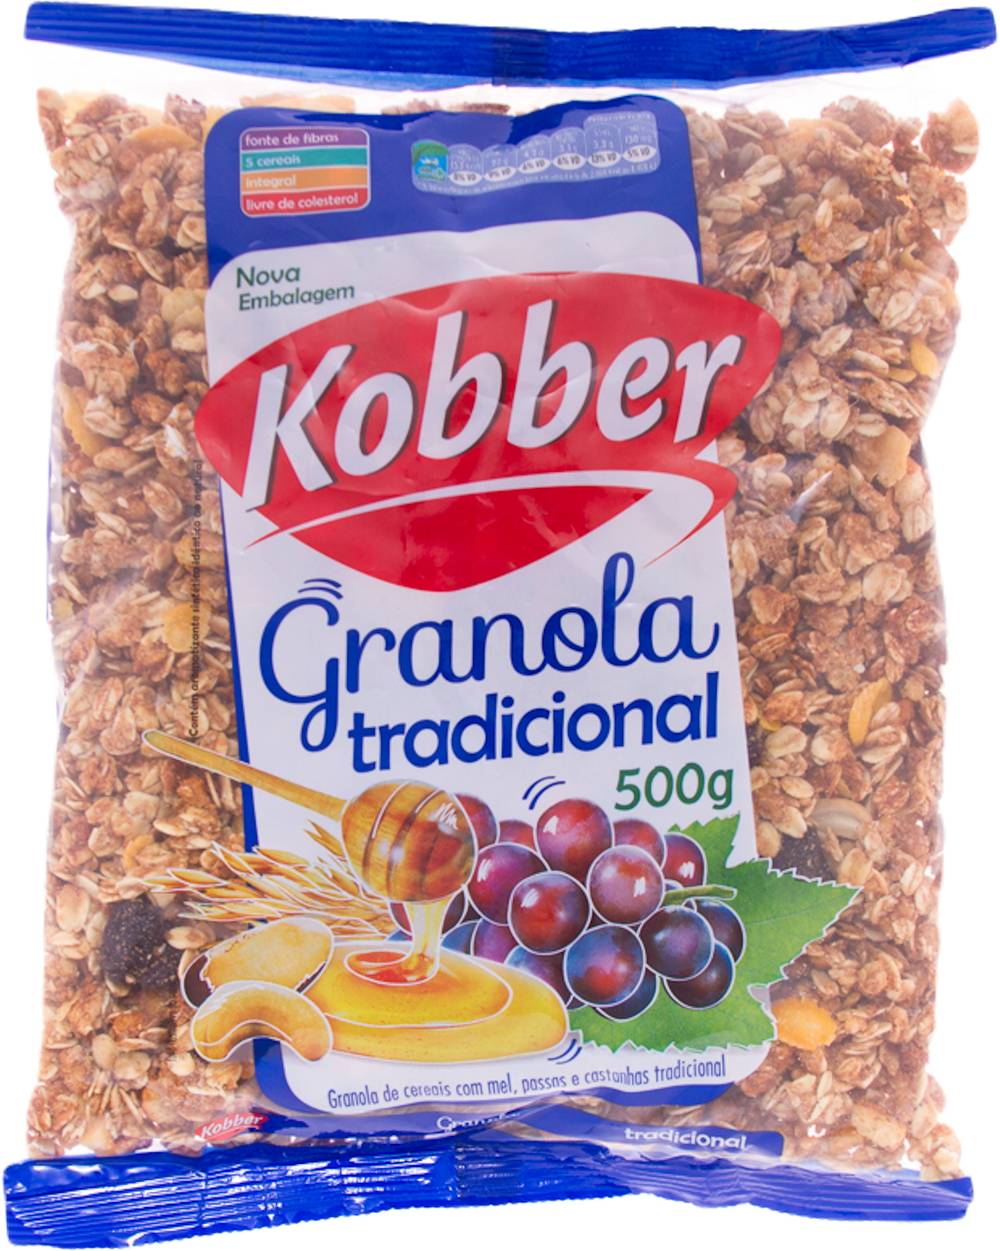 Kobber granola tradicional (500g)